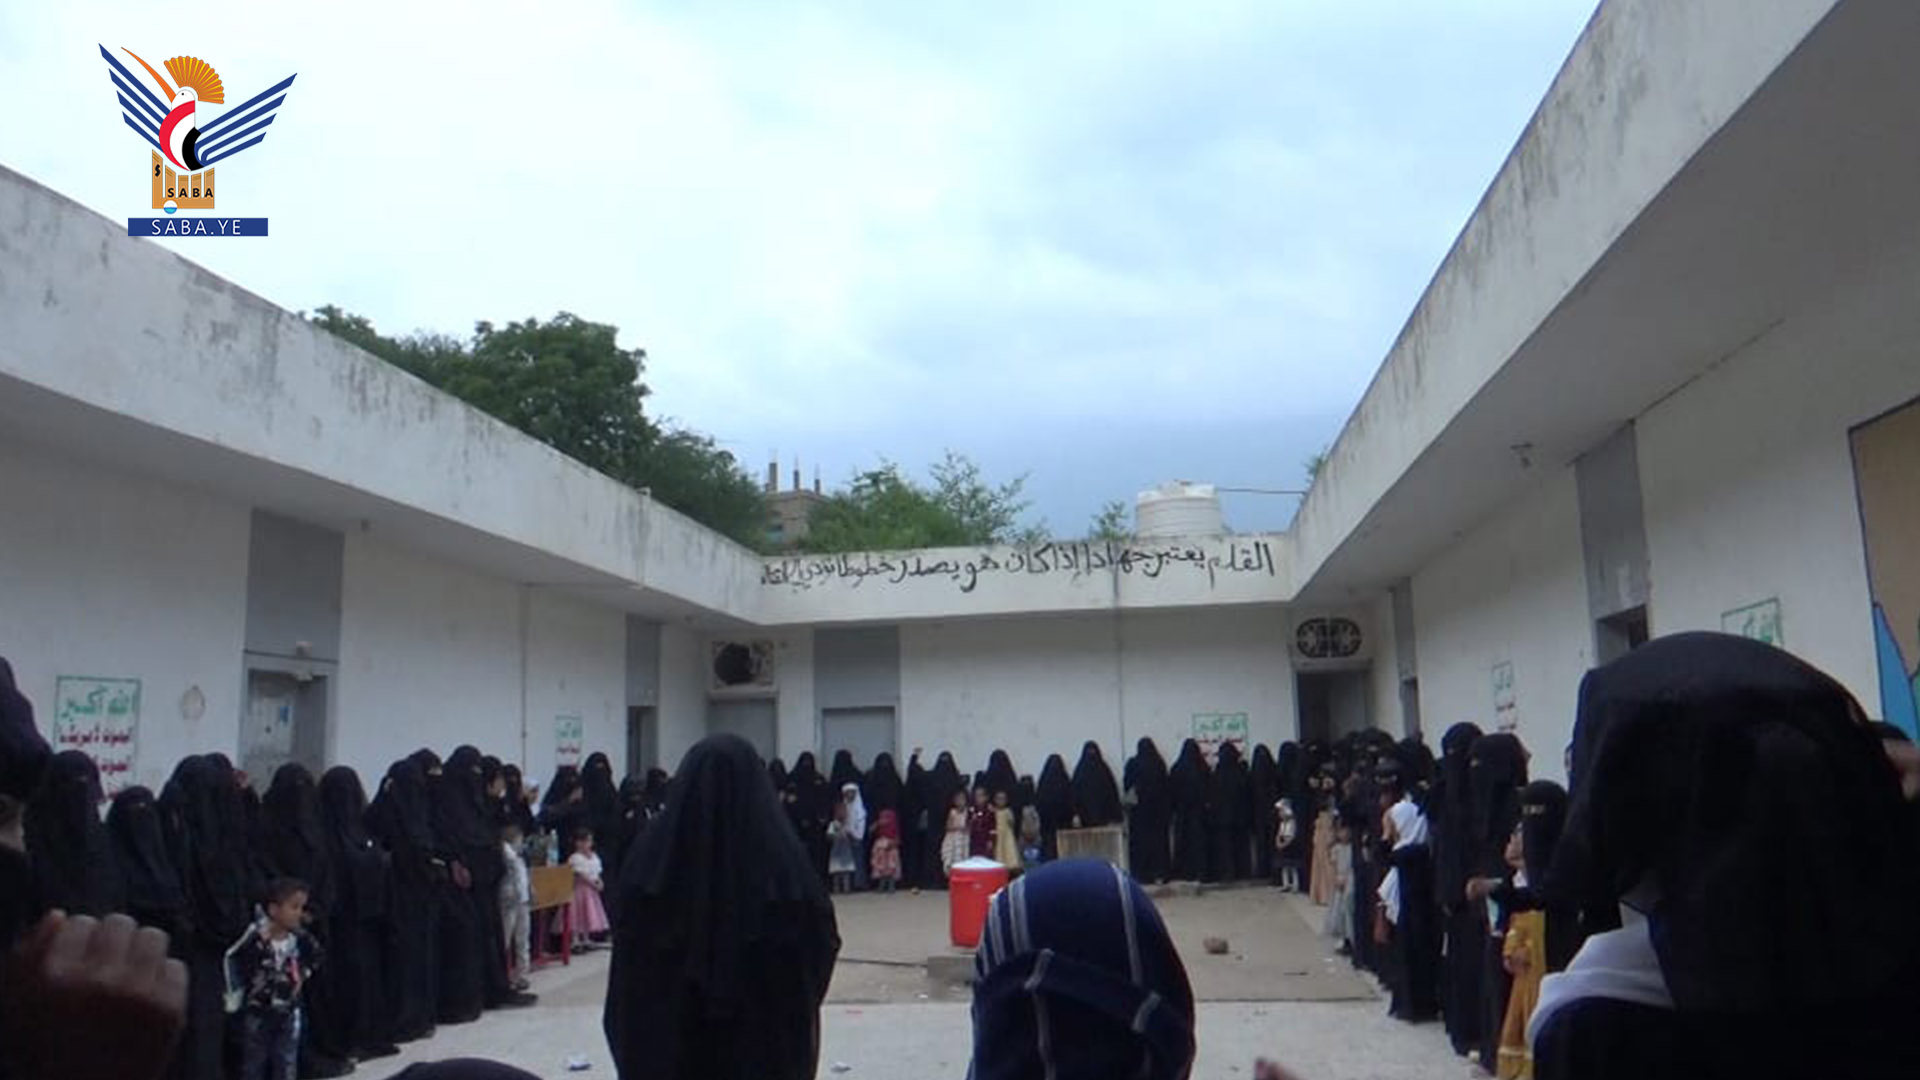 فعالية للهيئة النسائية بمديرية الجبين في ريمة بثورة 21 سبتمبر